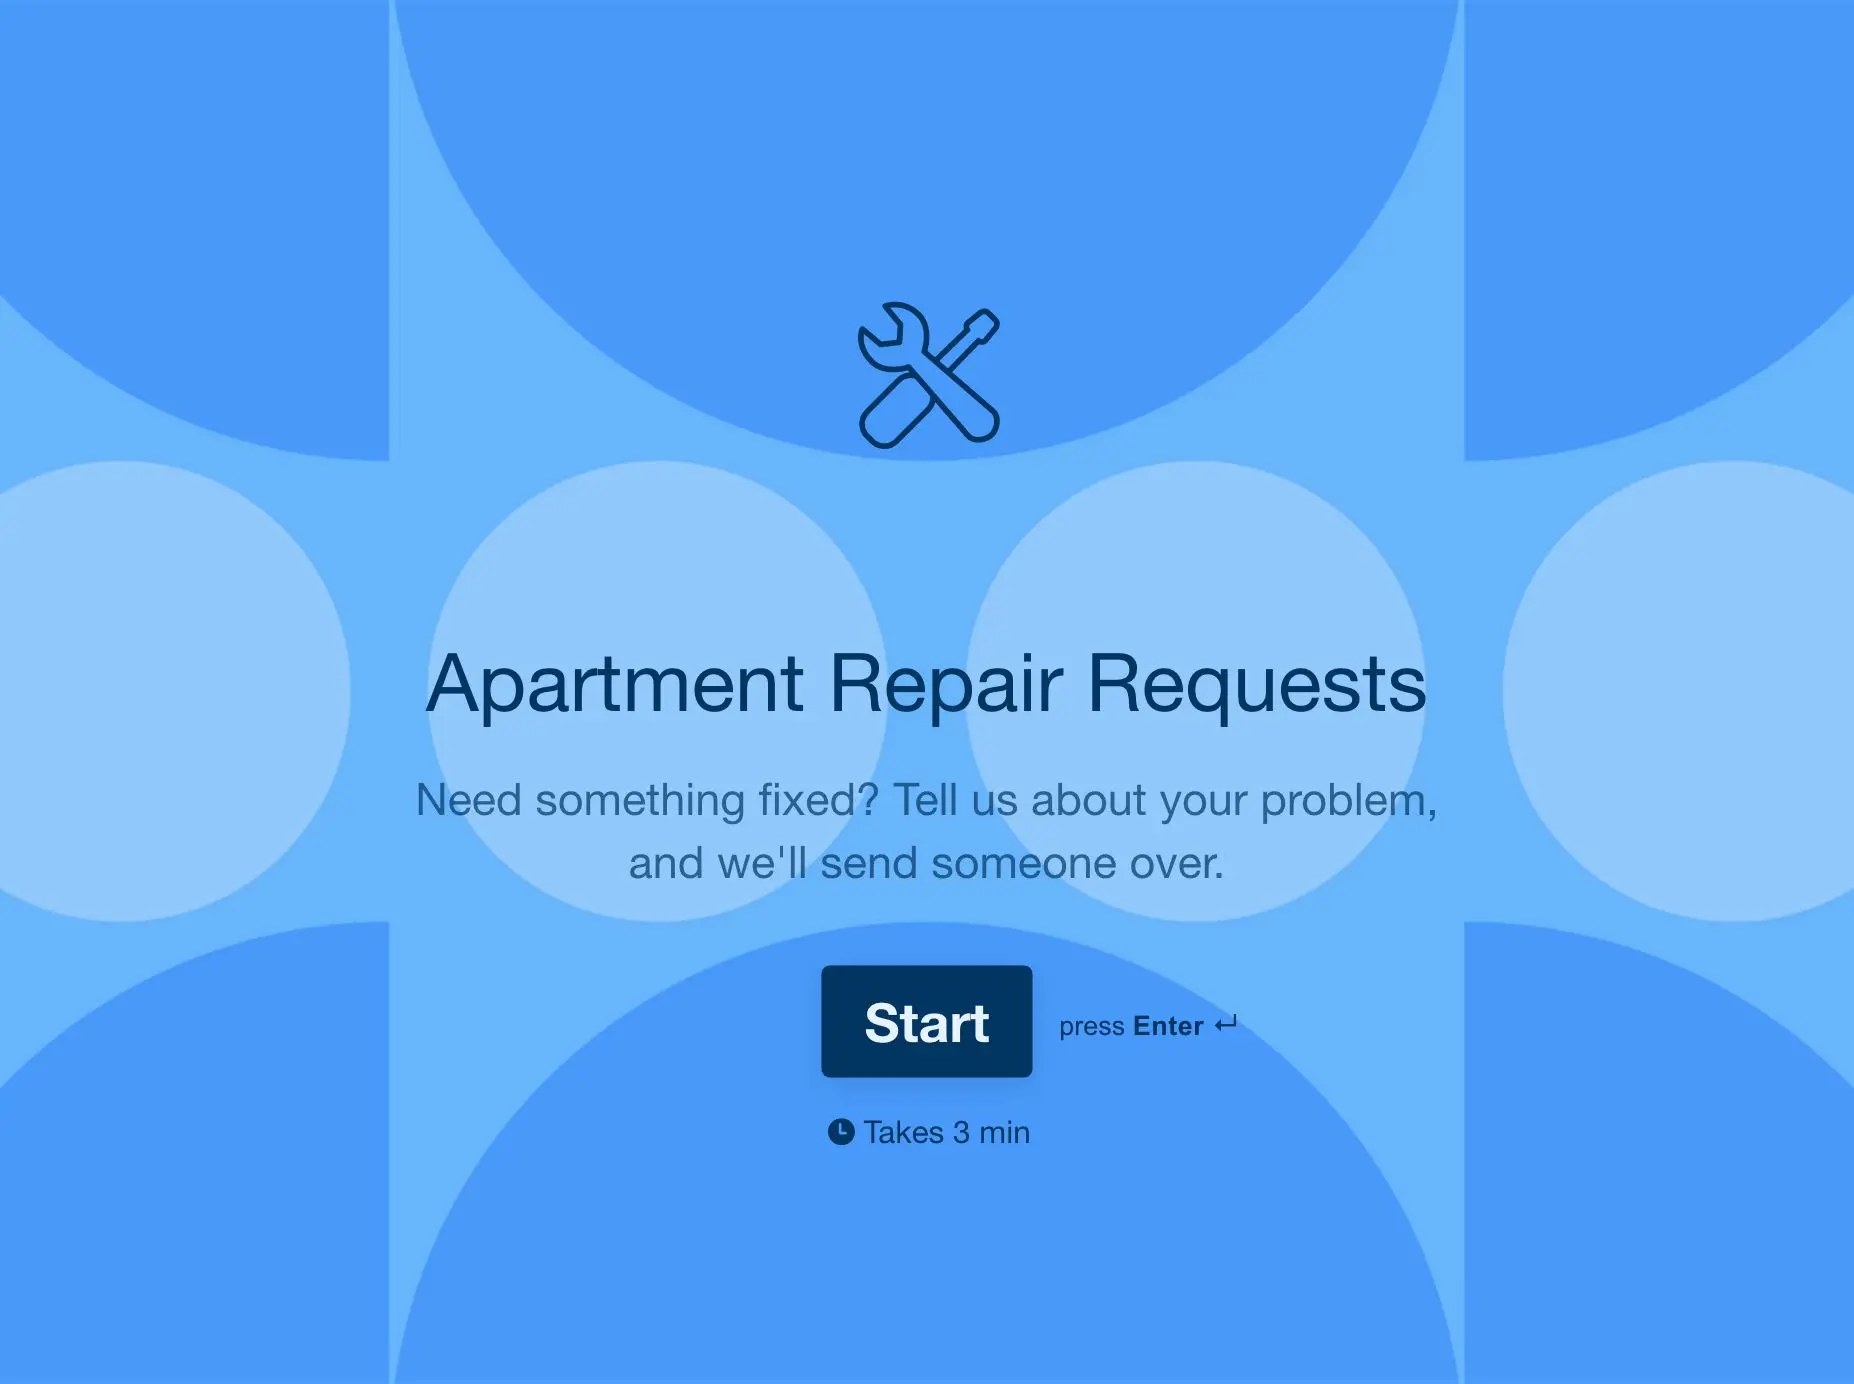  Apartment Repair Request Form Template Hero